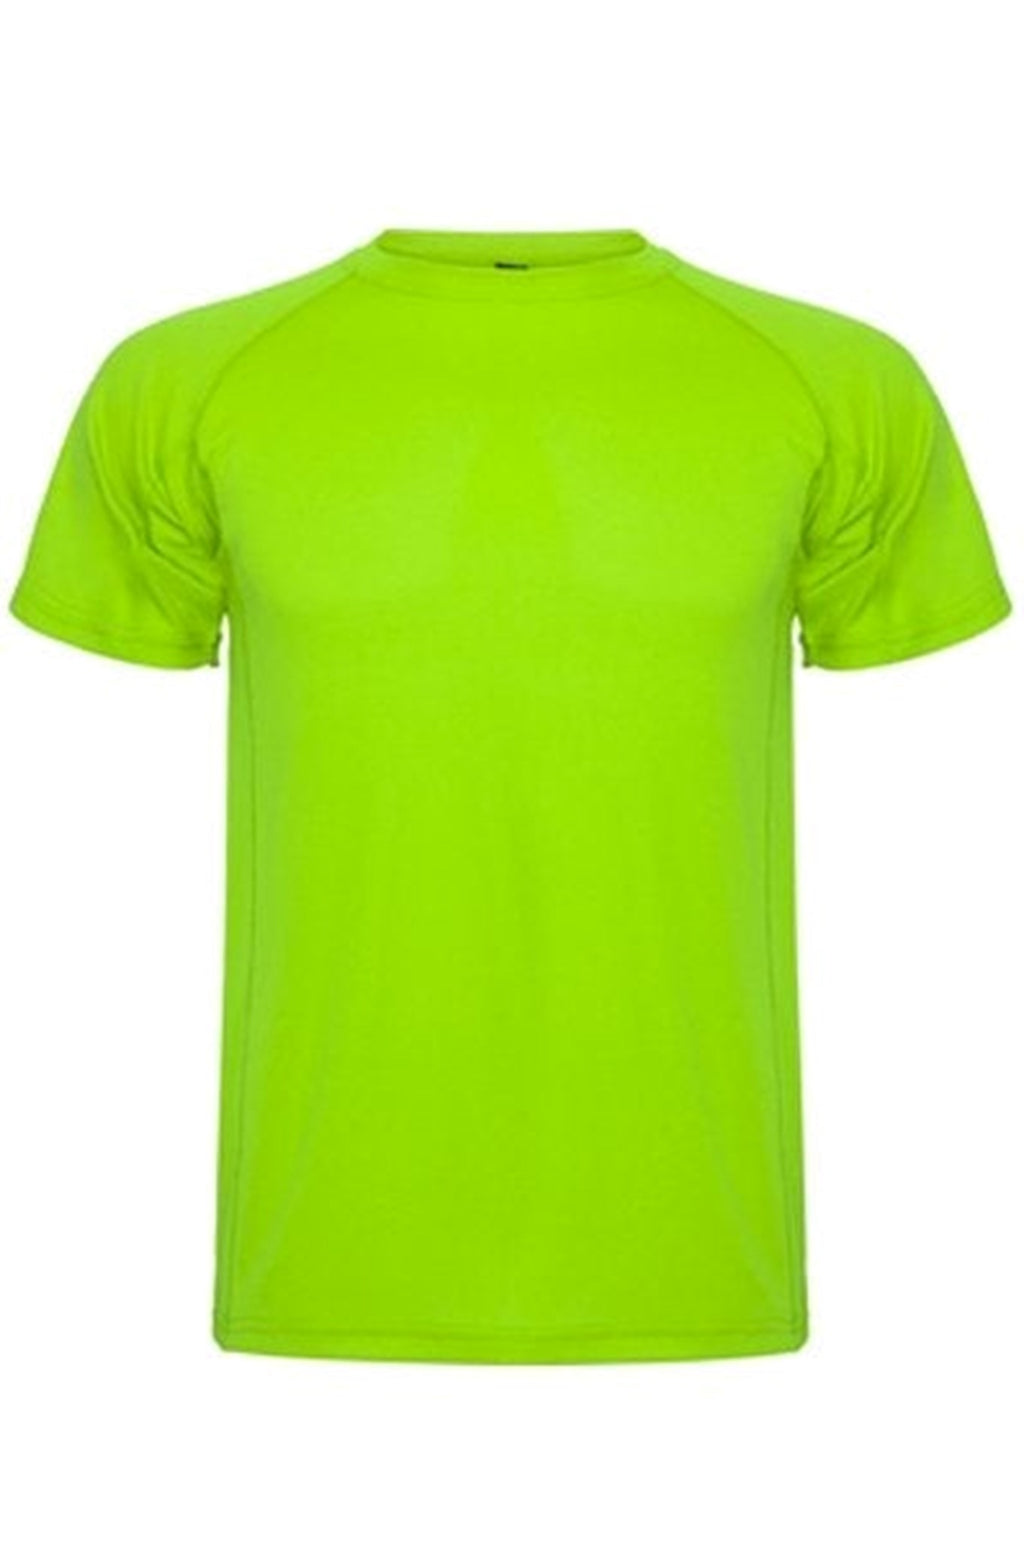 Trenings T-shirt - Lime Grønn